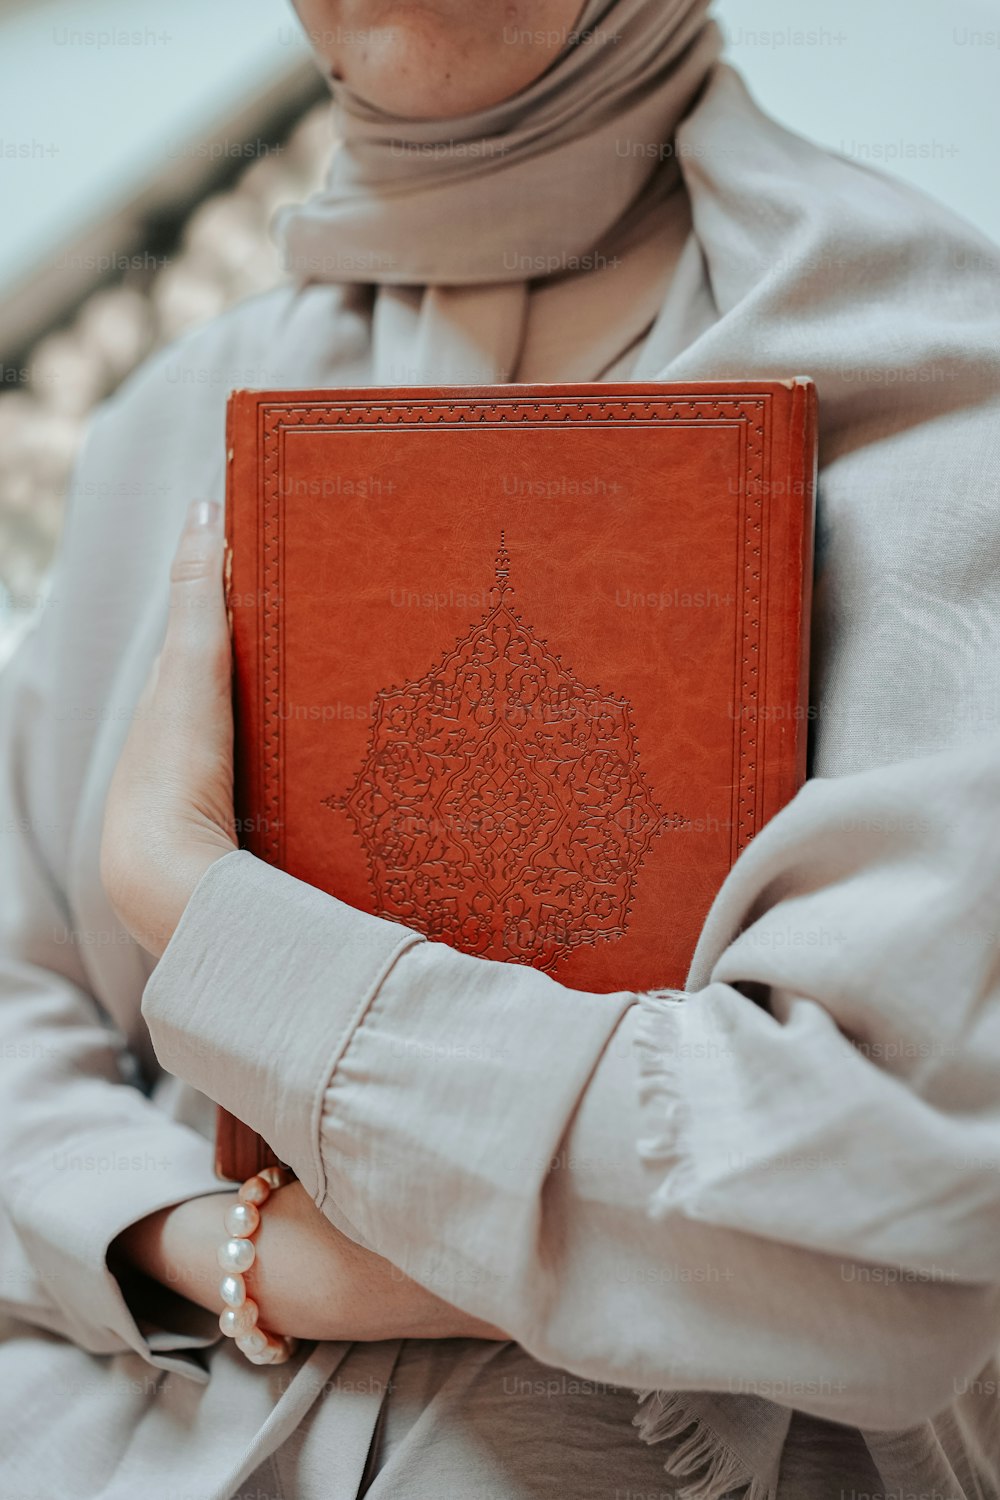 Una donna in un hijab che tiene un libro